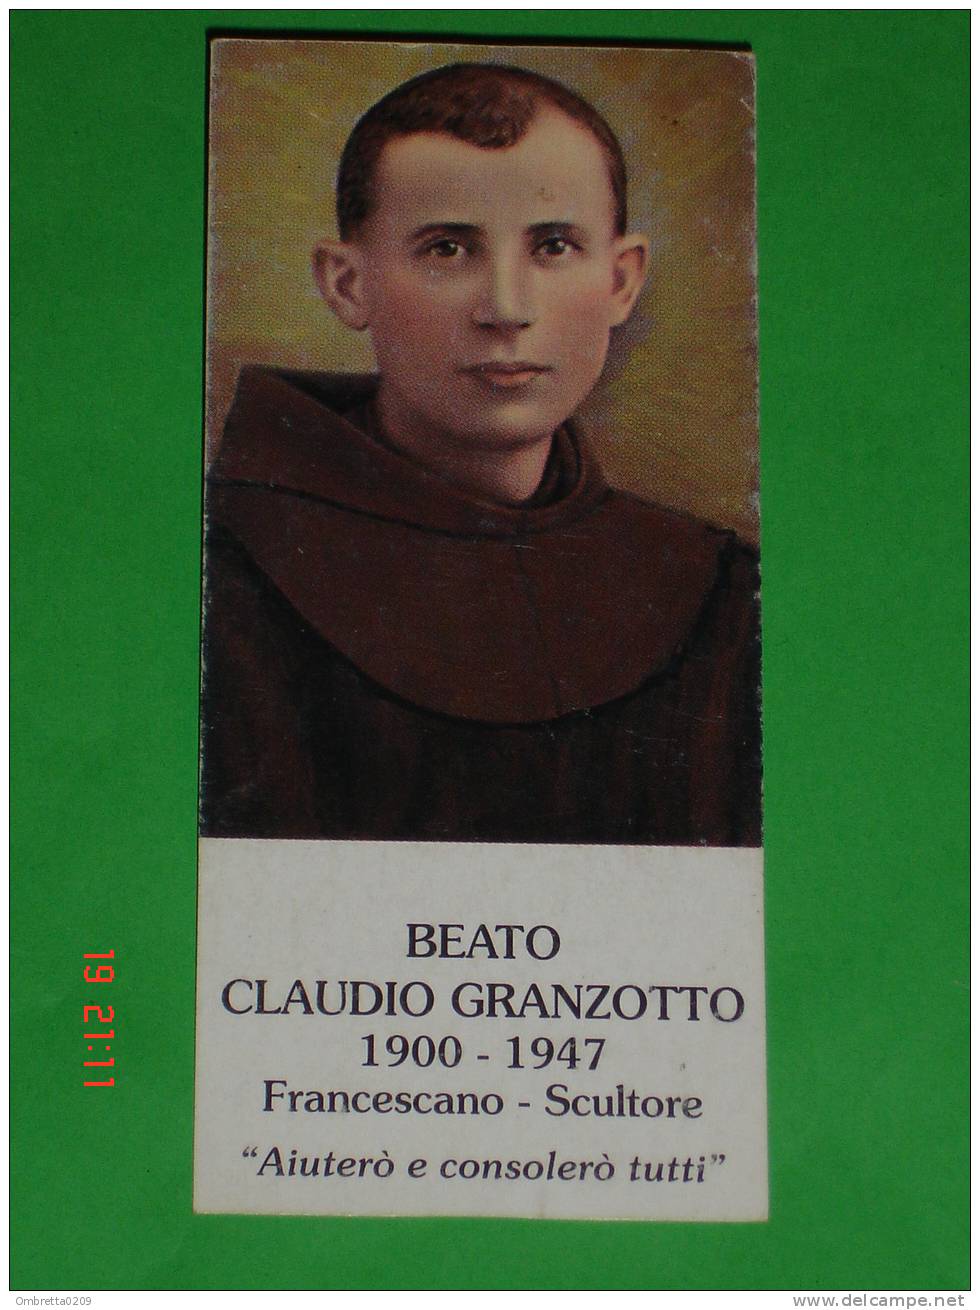 Beato Fra CLAUDIO ( RICCARDO GRANZOTTO ) - S.Lucia Di Piave, Treviso - Chiampo, Vicenza, 15 Agosto 1947- Scultore - Santini